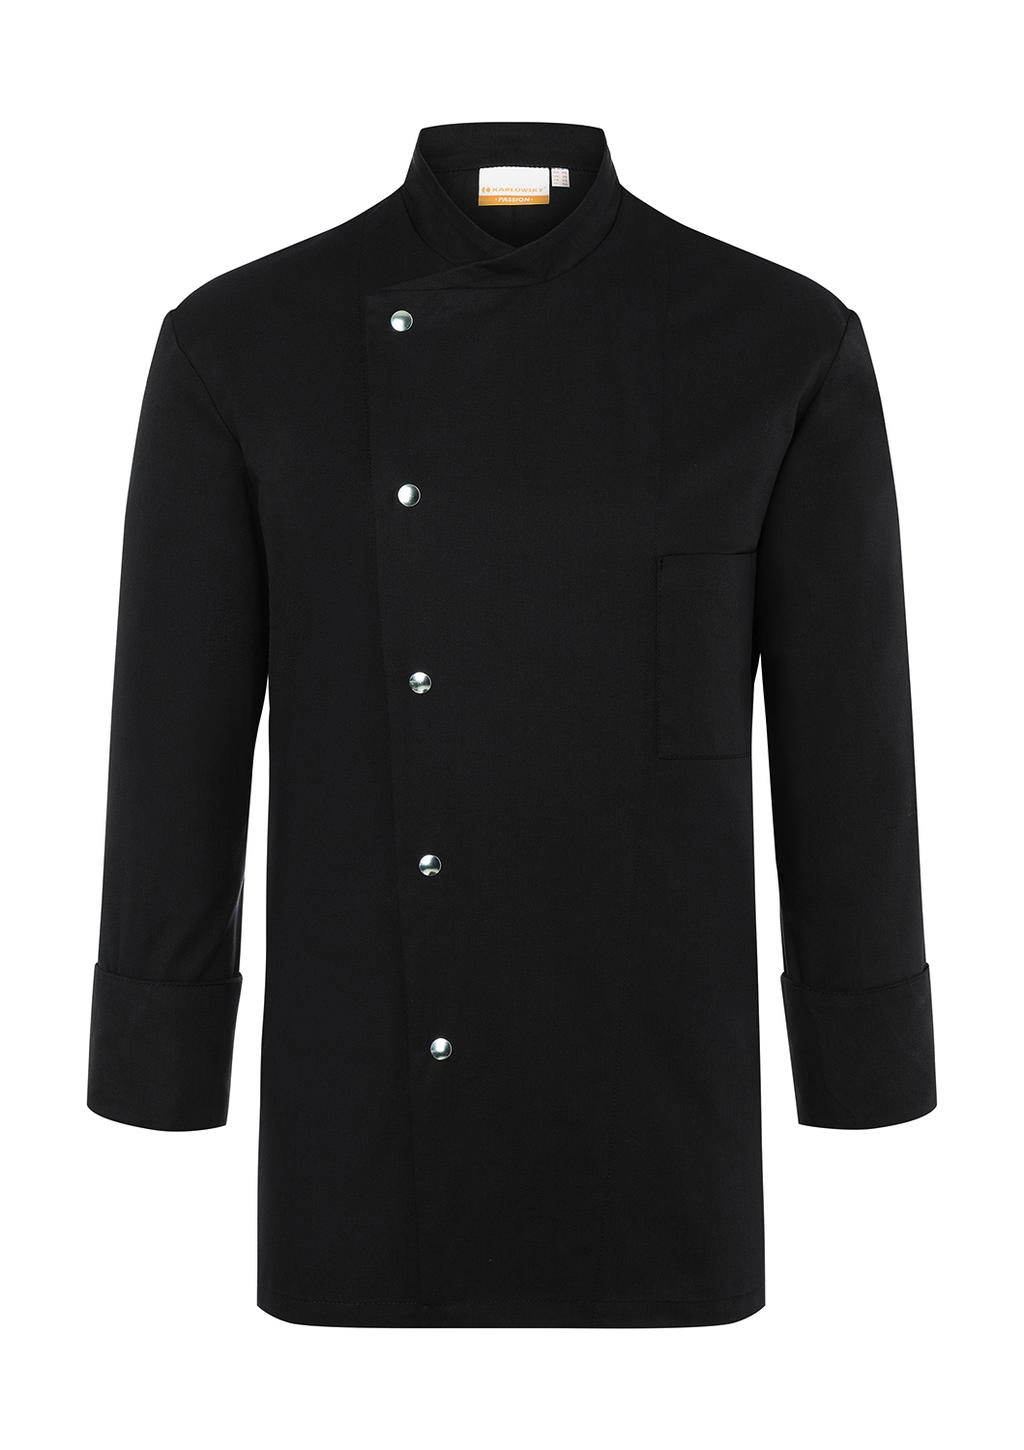 Chef Jacket Lars Long Sleeve zum Besticken und Bedrucken in der Farbe Black mit Ihren Logo, Schriftzug oder Motiv.